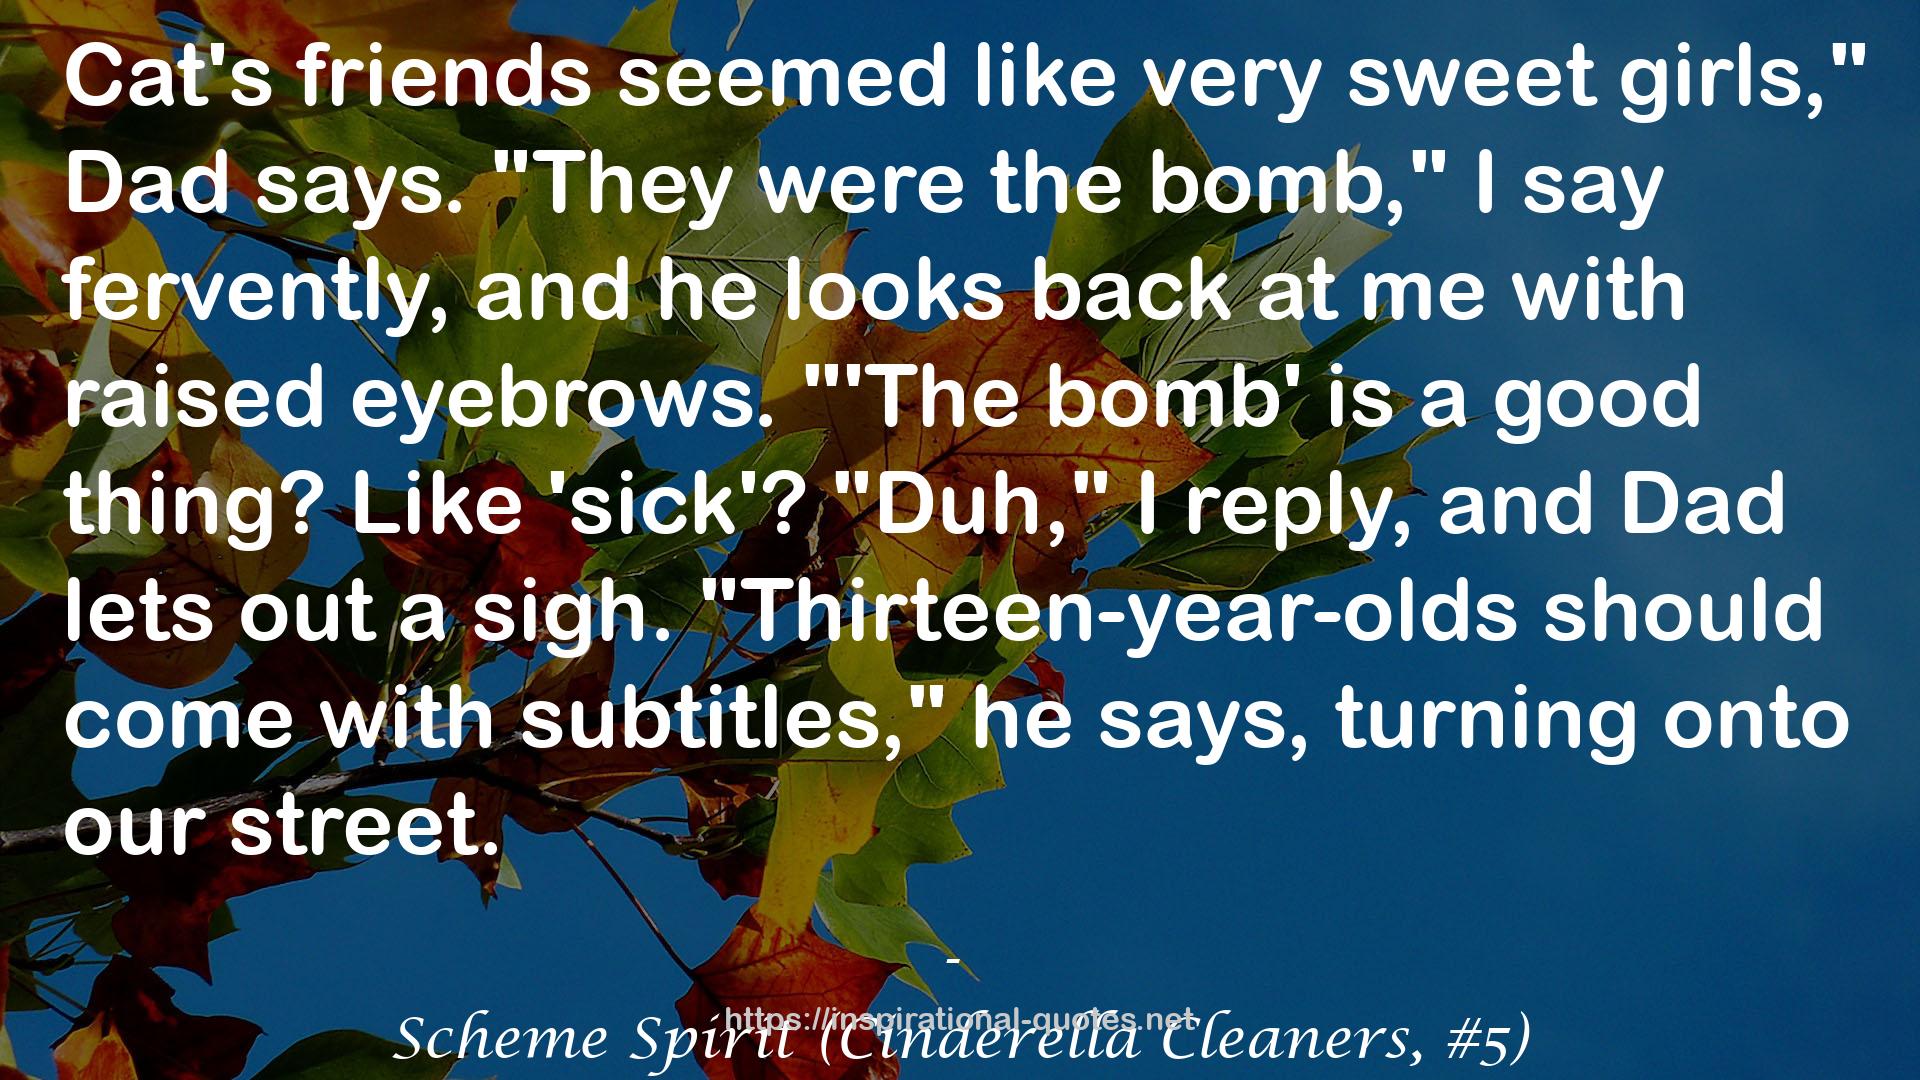 Scheme Spirit (Cinderella Cleaners, #5) QUOTES